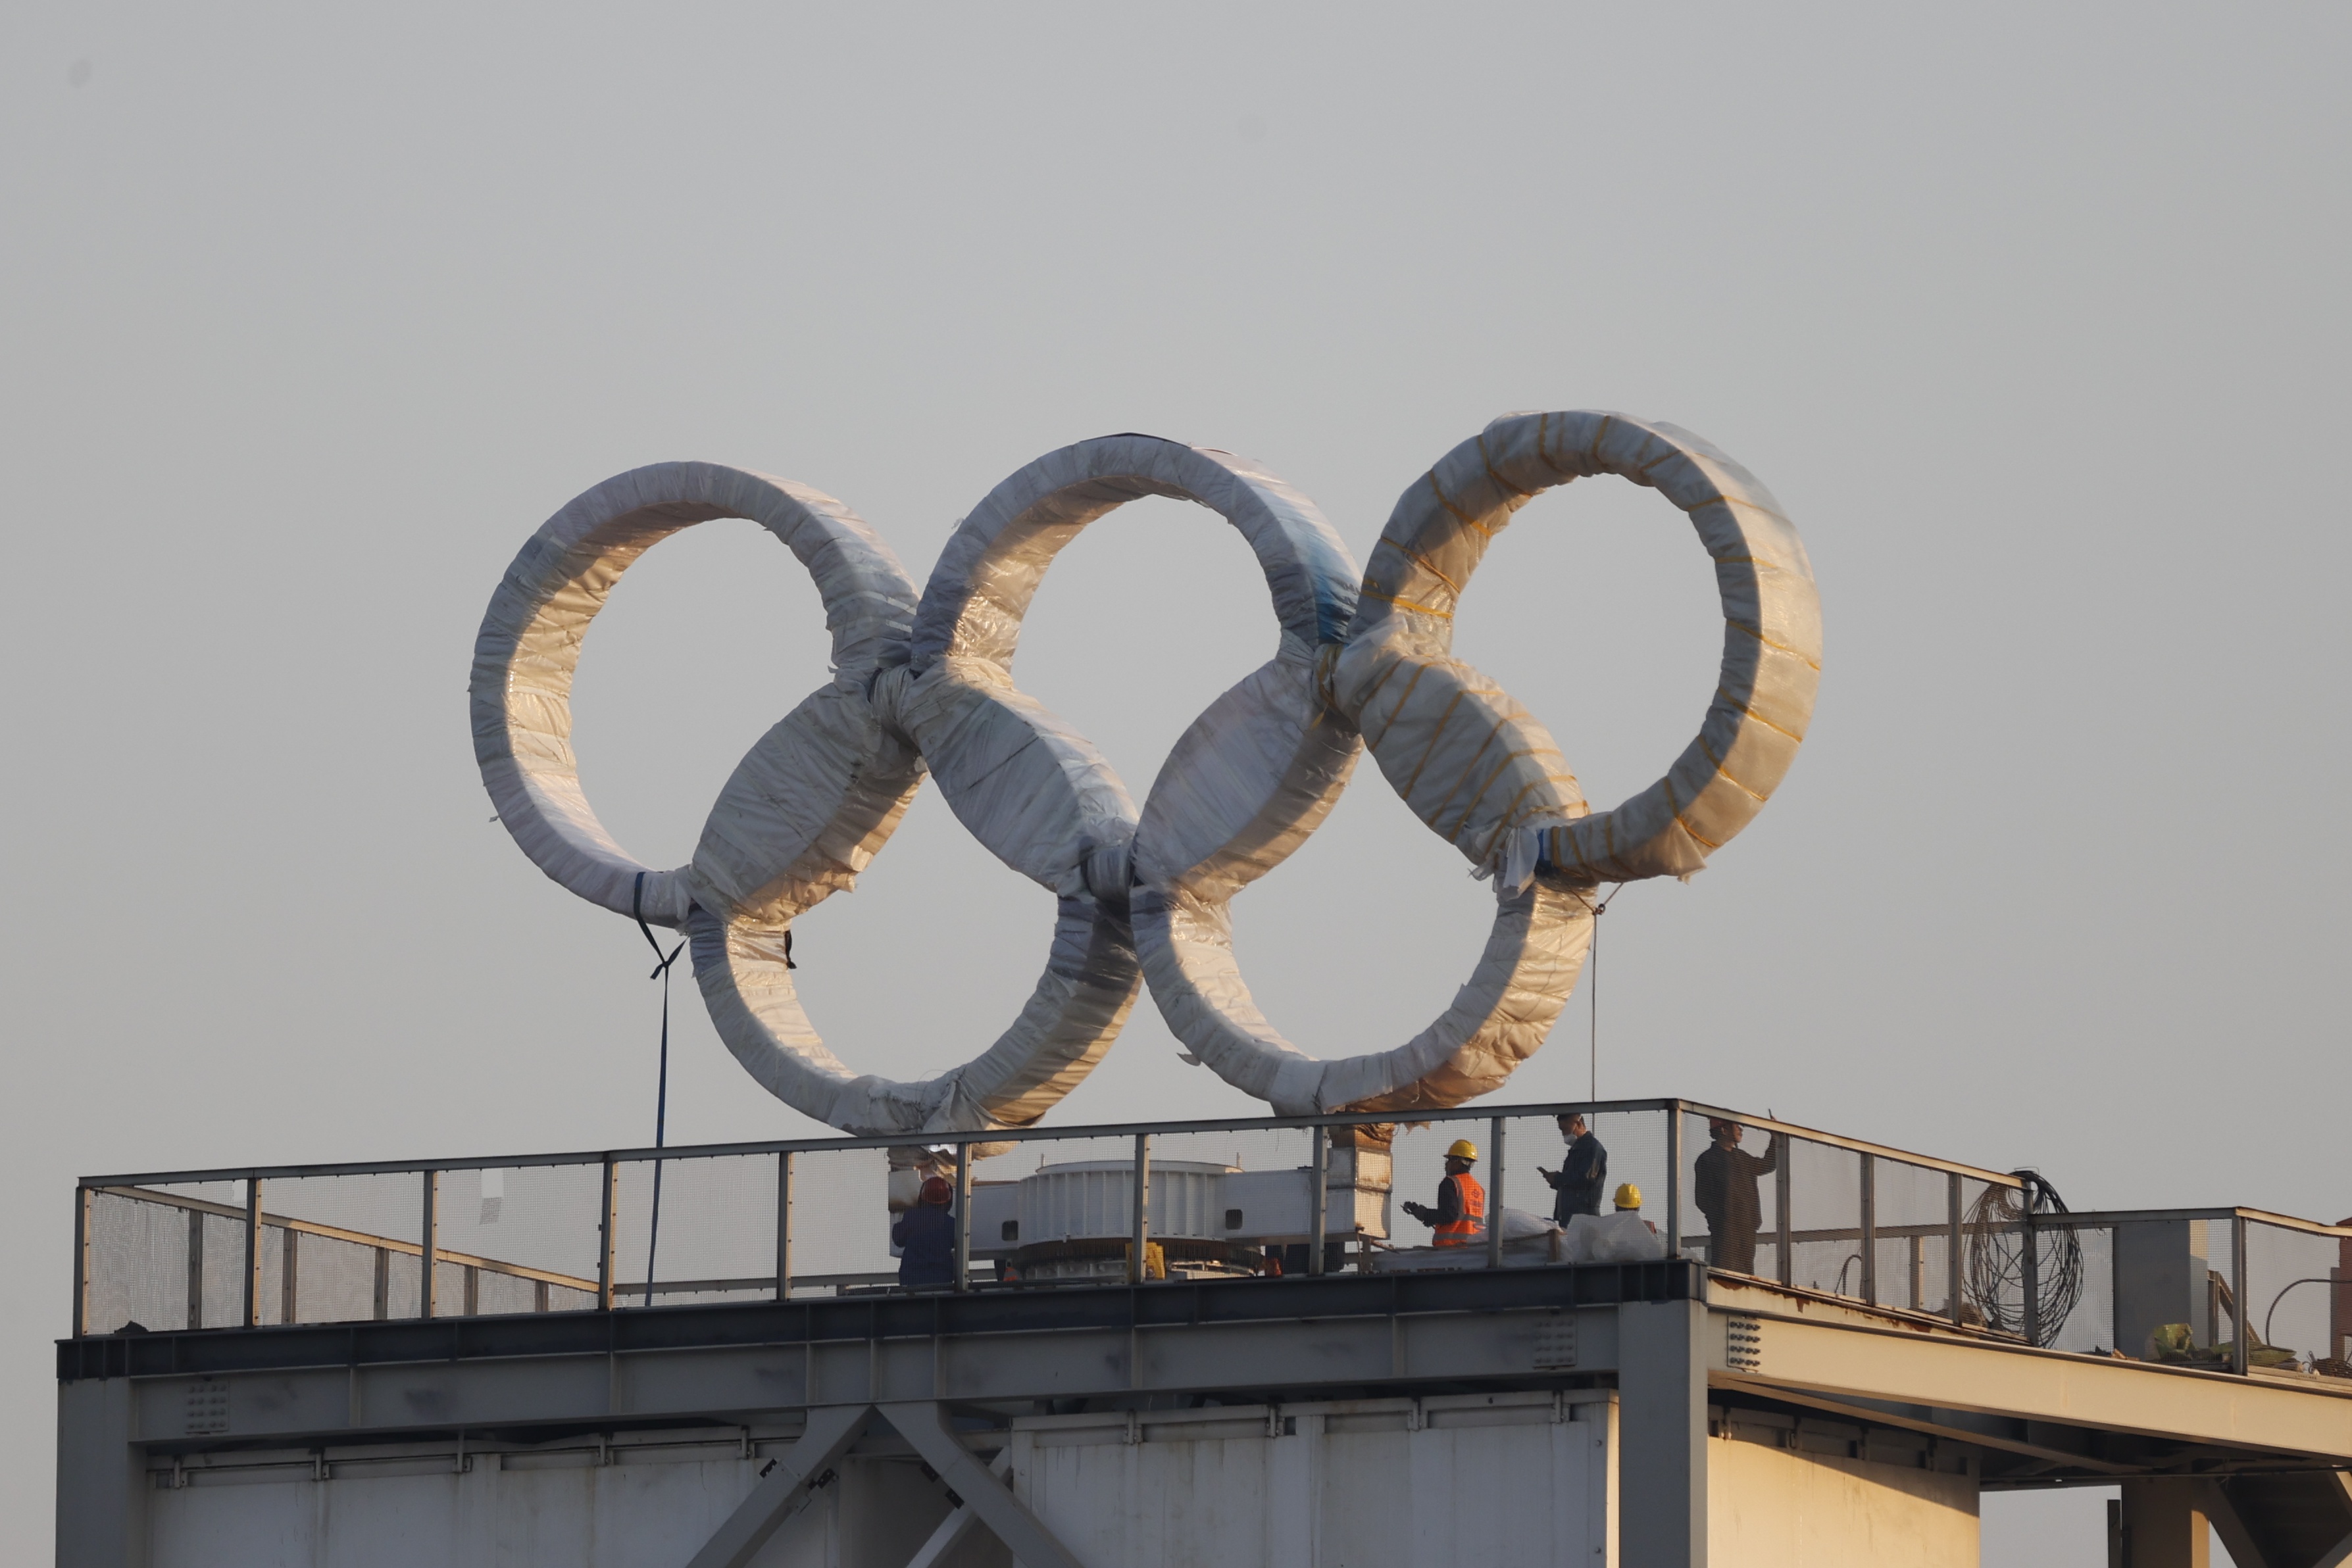 北京奥运五环图片素材免费下载 - 觅知网